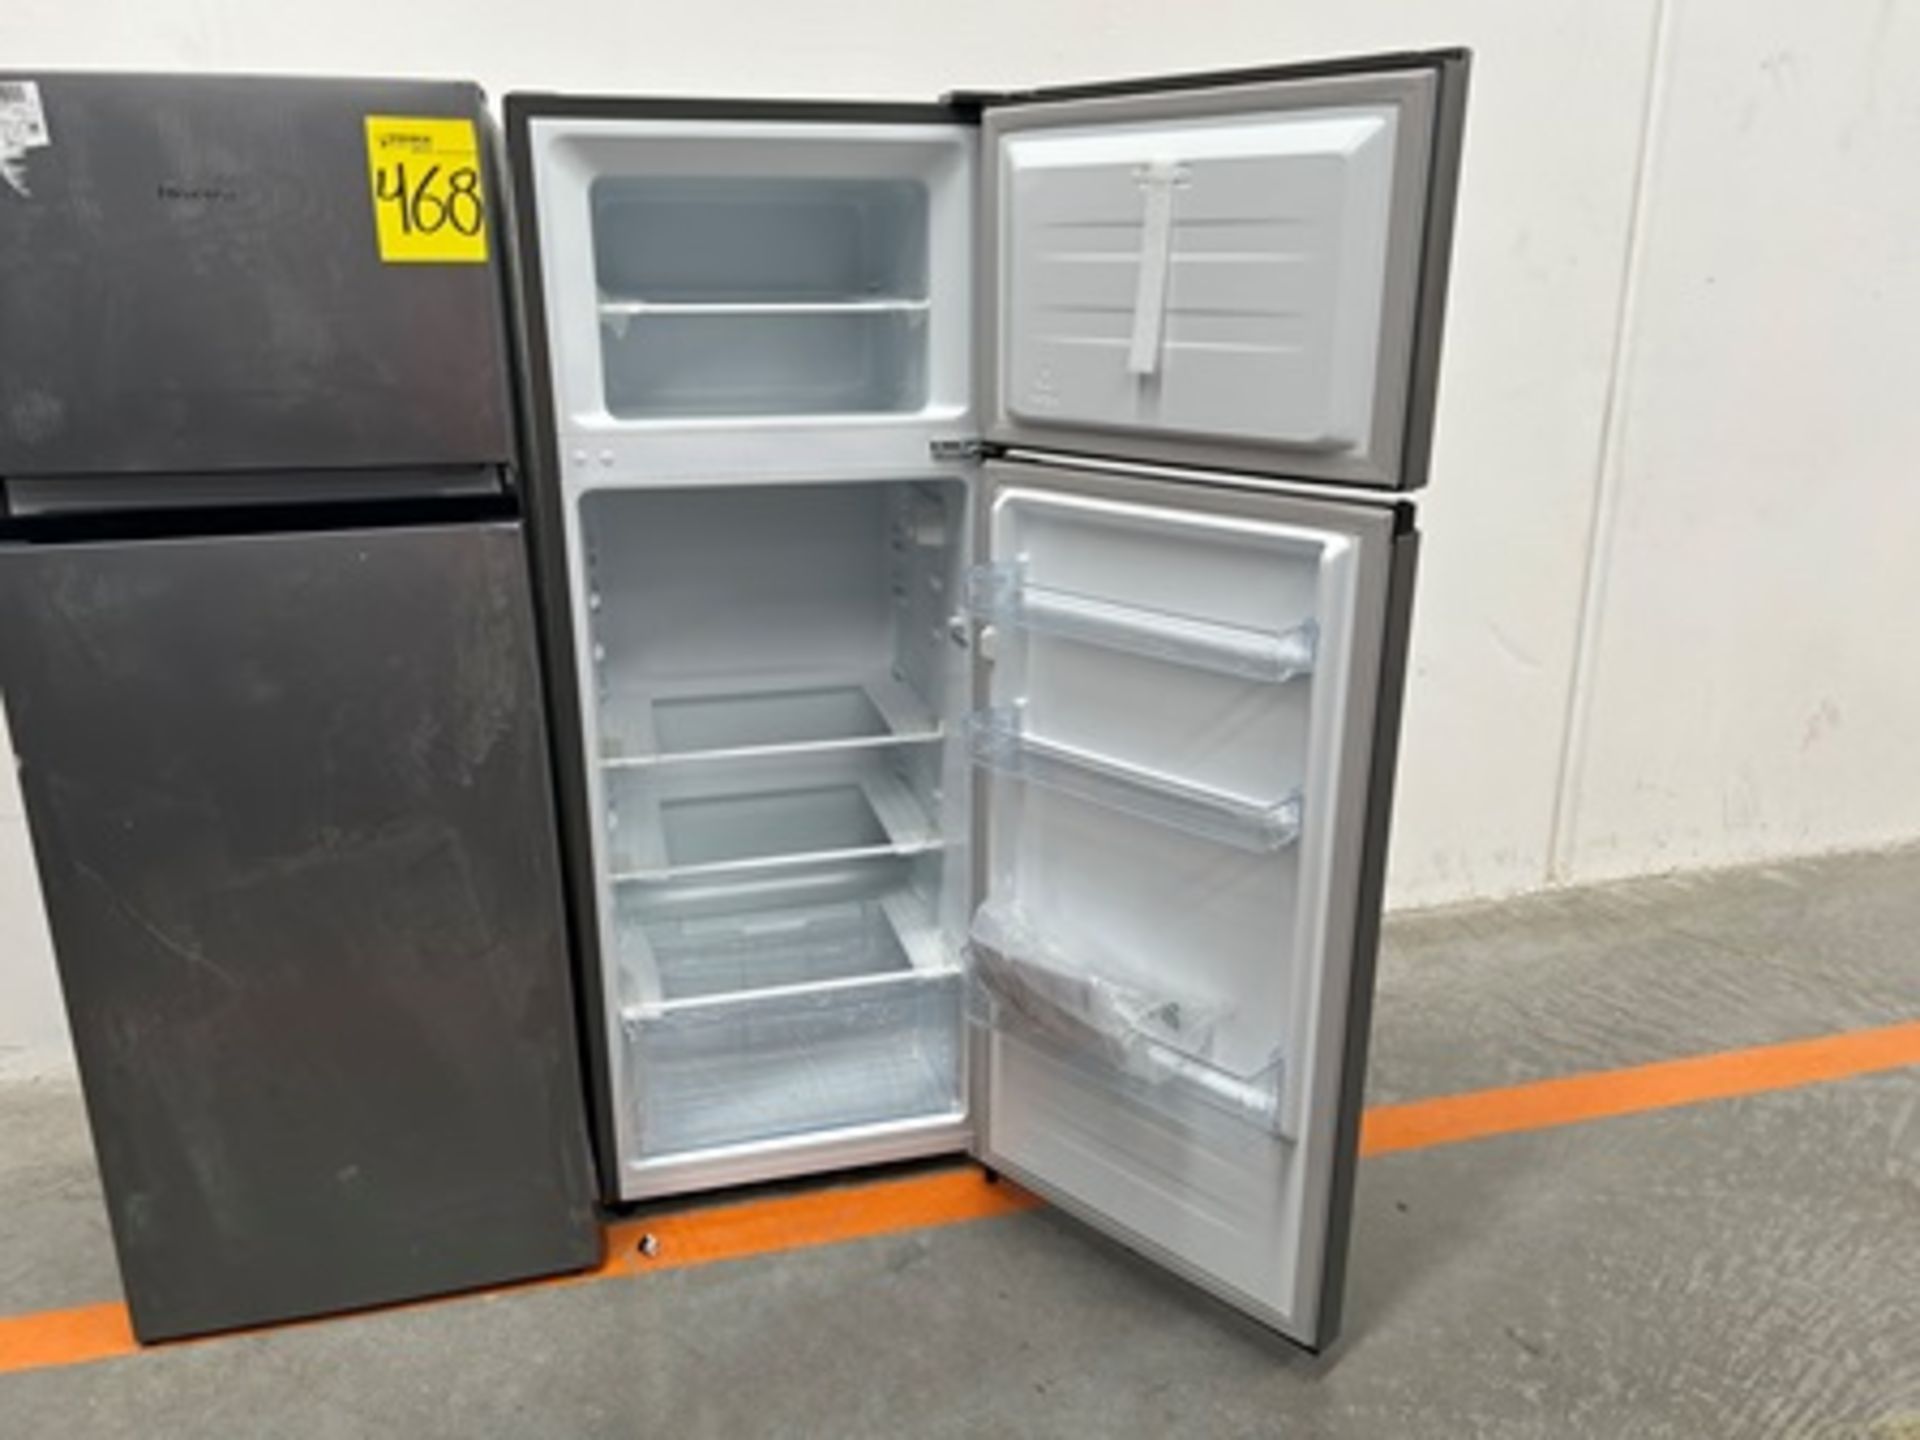 Lote de 2 refrigeradores contiene: 1 refrigerador Marca HISENSE, Modelo RT80D6AGX, Serie P20091, Co - Image 4 of 11